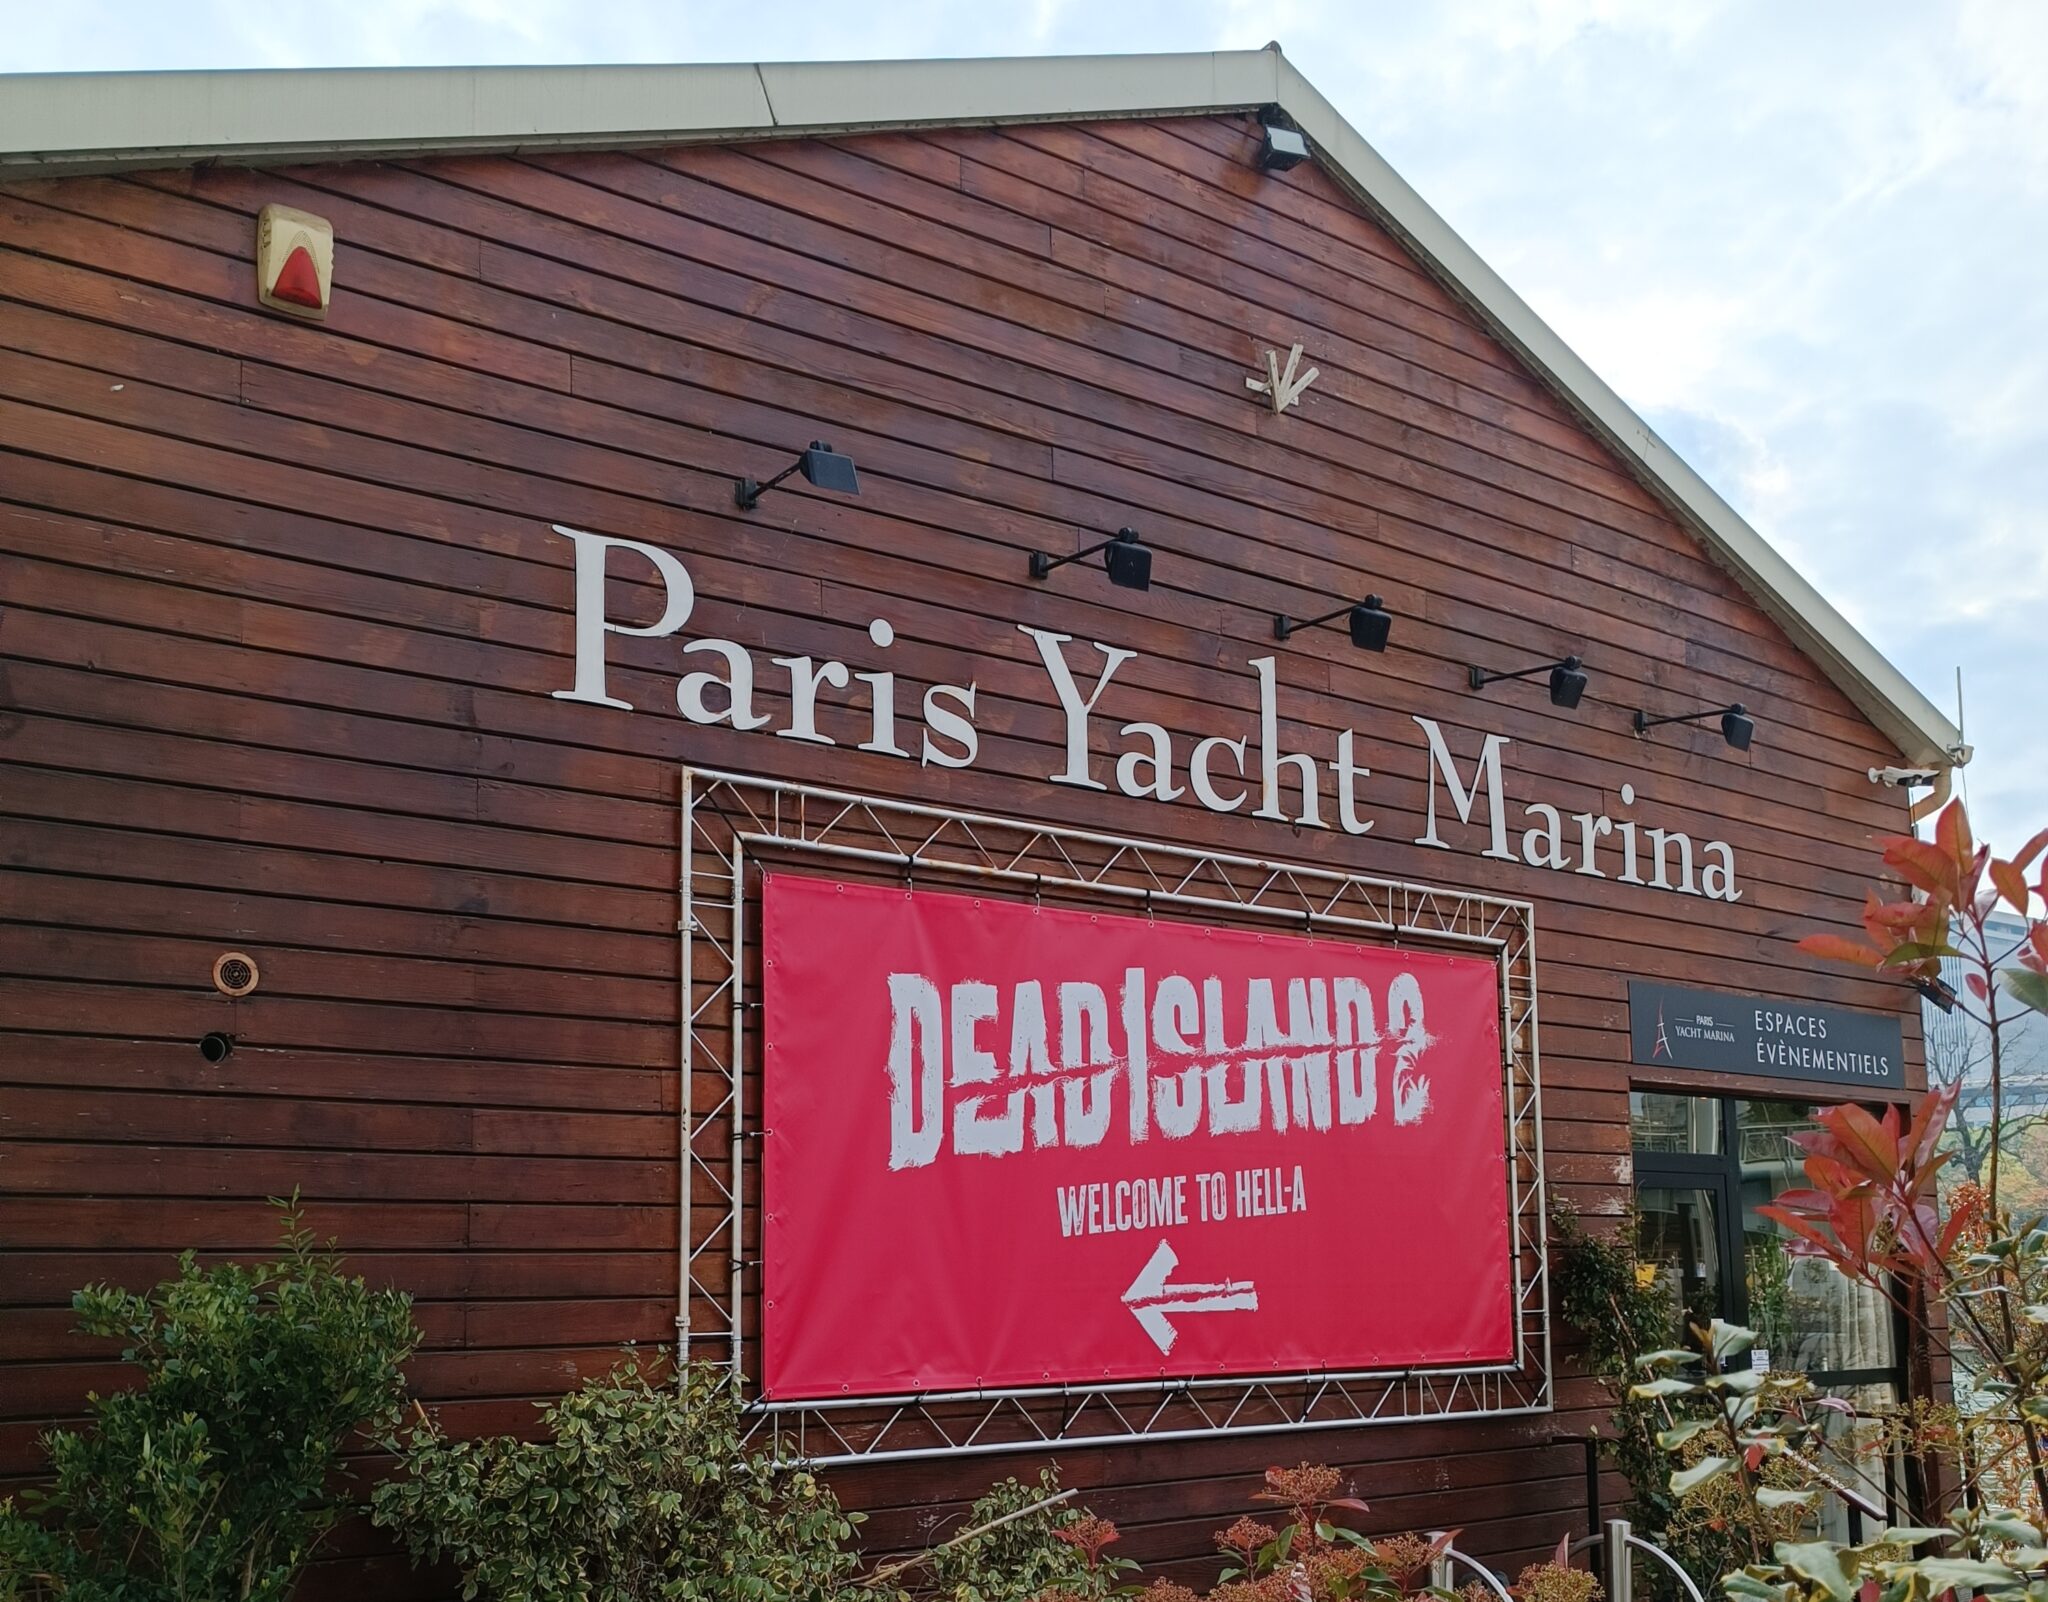 Devanture Paris Yacht Marina pour la soirée de lancement Dead Island 2